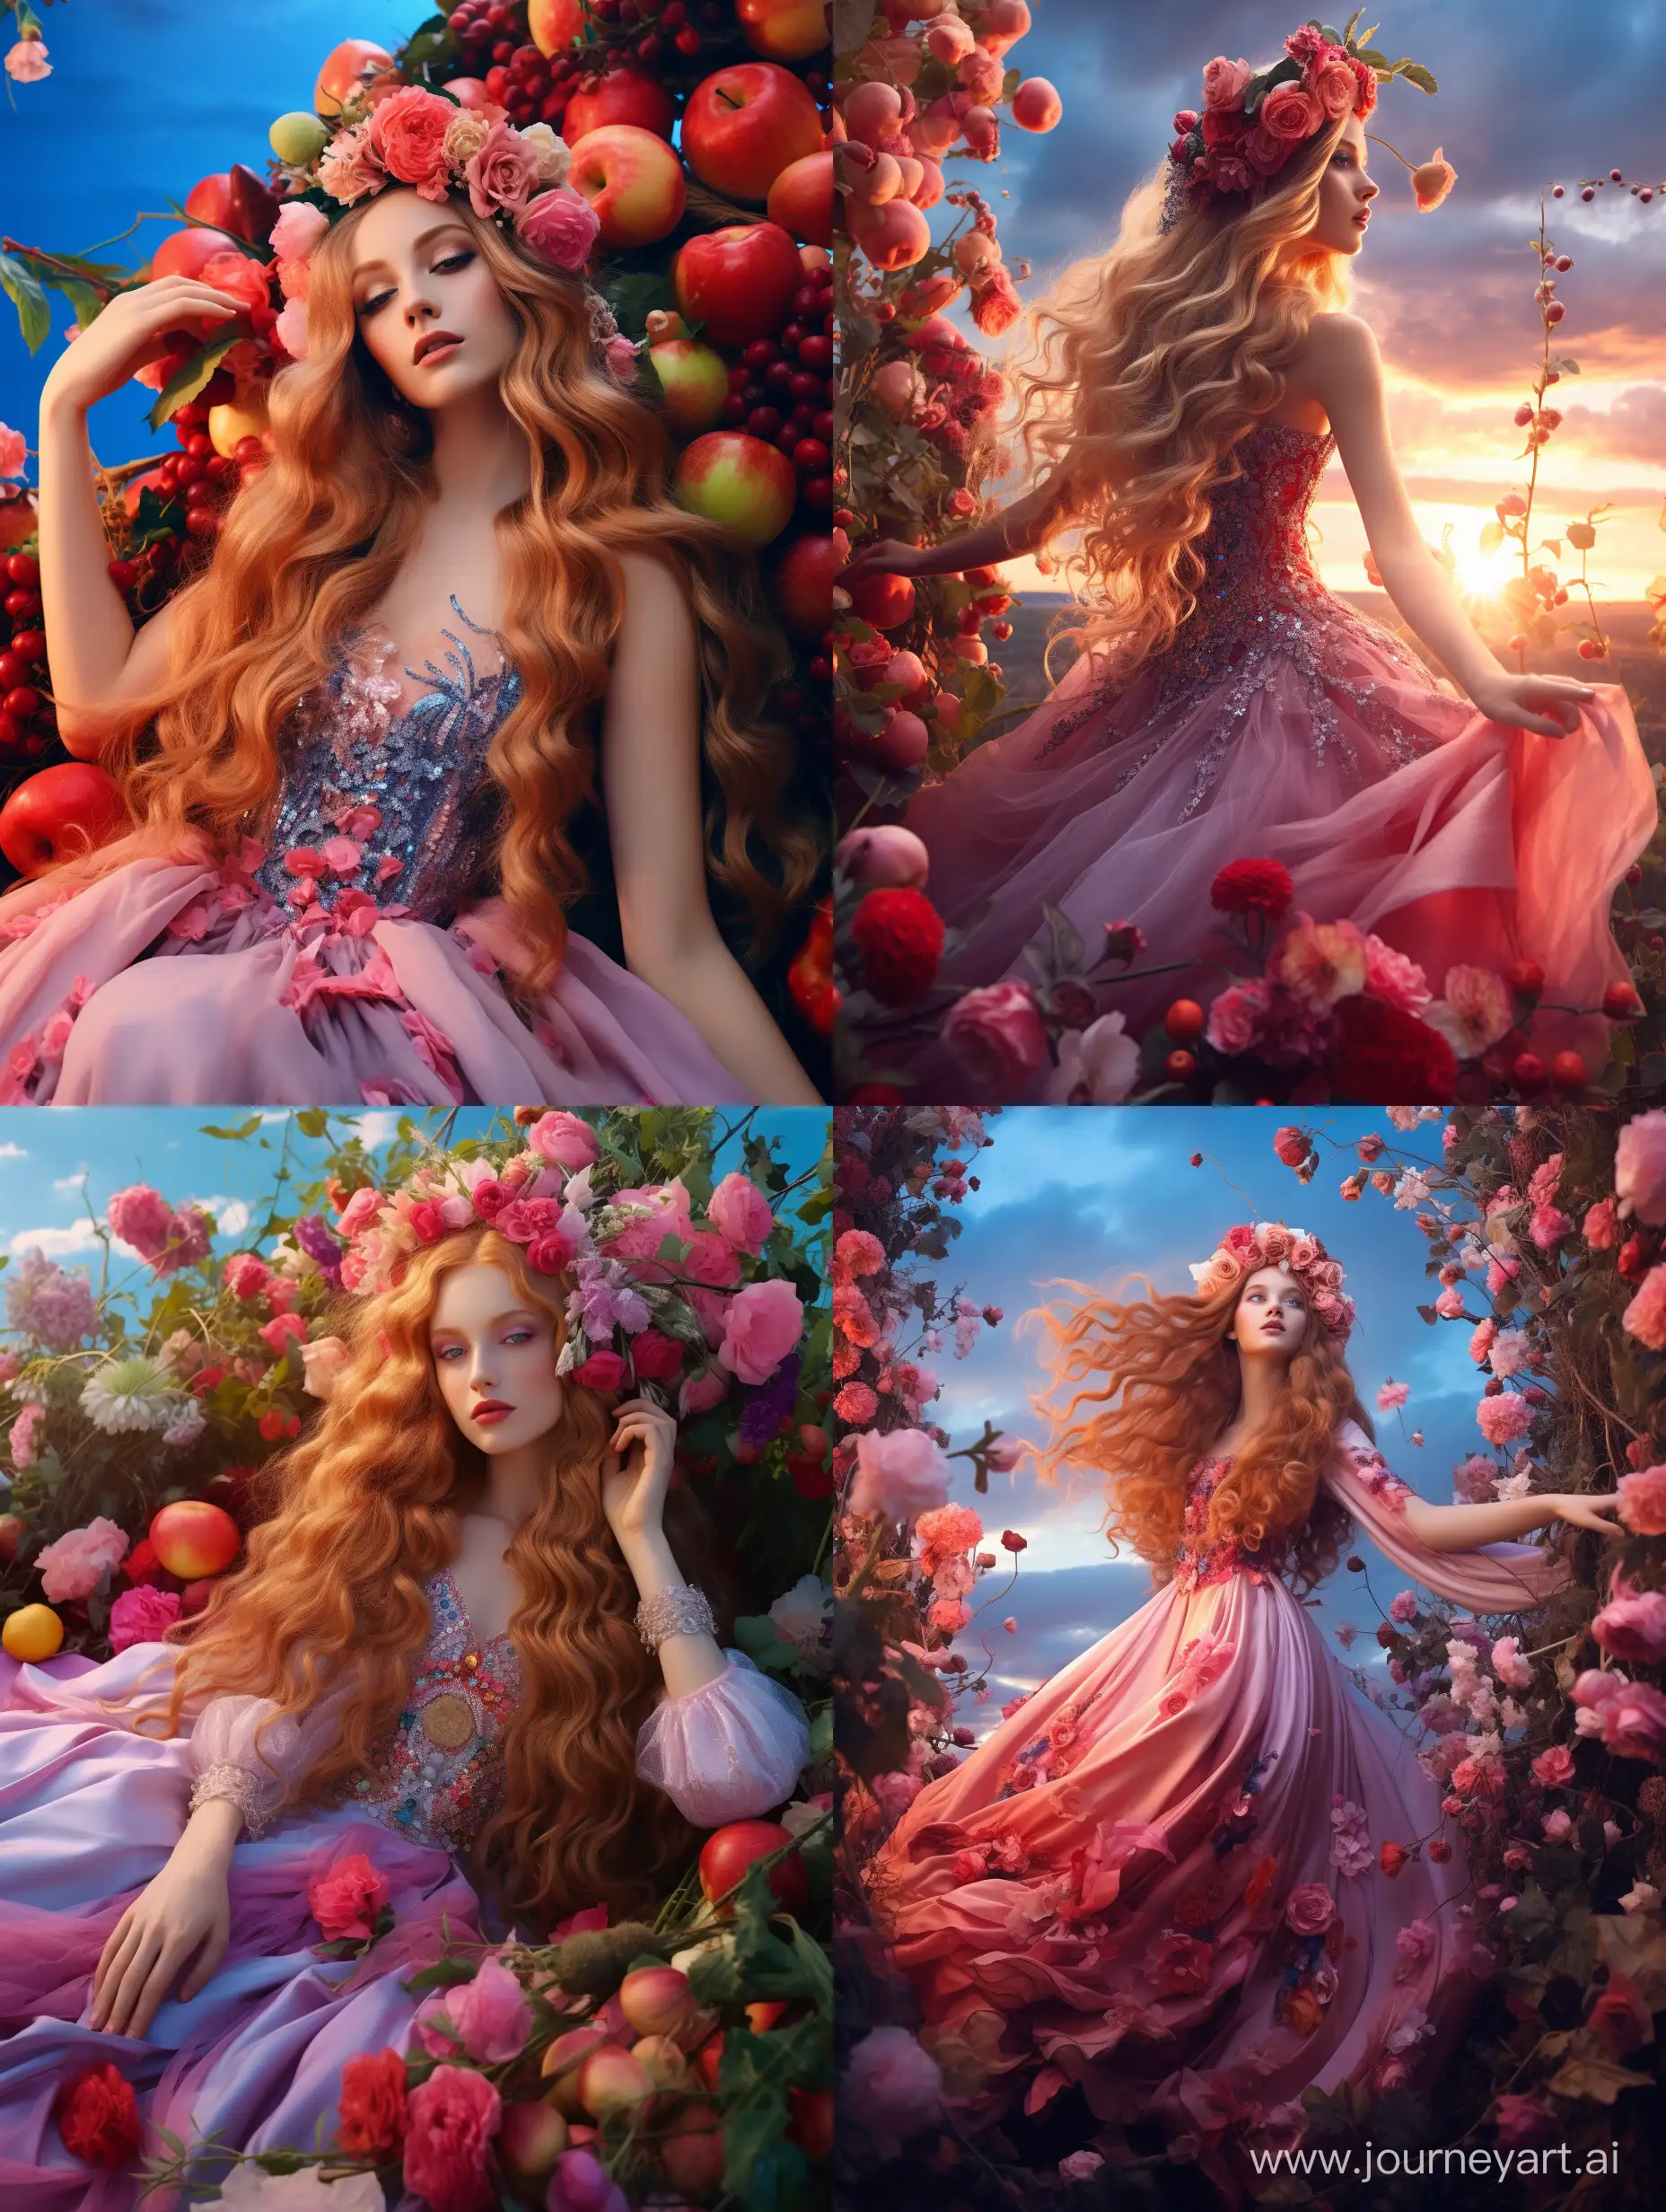 Королева-лето, невероятно красивая девушка в полный рост, с розовыми длинными волосами, на голове венок из цветов, в платье из ягод и цветов в летнем саду, красивый пейзаж на фоне, синее небо, растут ягоды, продолжение платья из цветов, завихряются у подола платья, неоновые переливы, высокое разрешение, эстетично, красиво, яркое освещение, фотореализм